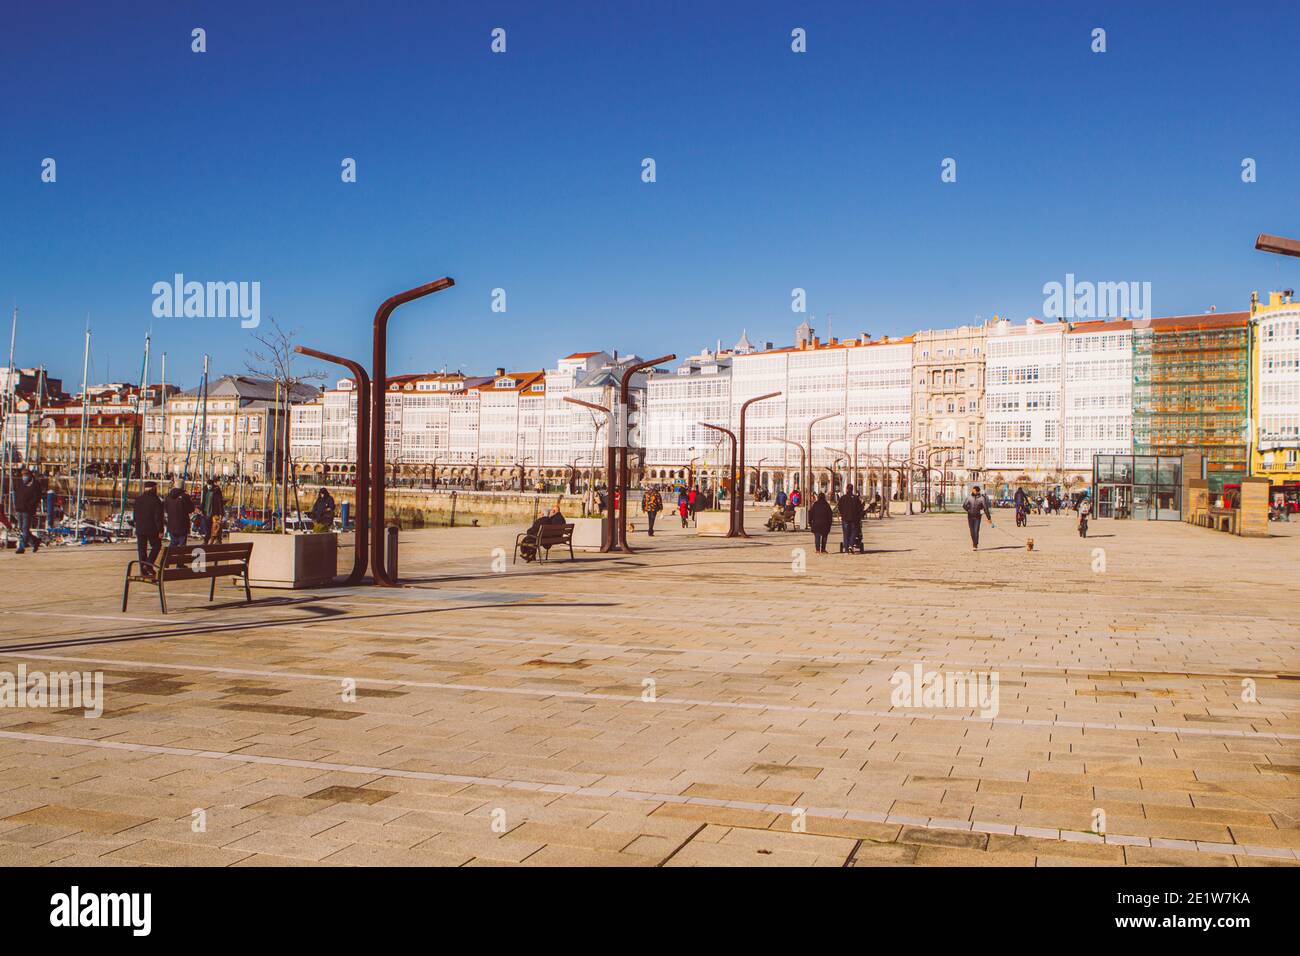 Coruna, España. Gente caminando por el Paseo del Parrote a Coruña con las típicas galerías blancas al fondo el 8 de enero de 2021 Foto de stock